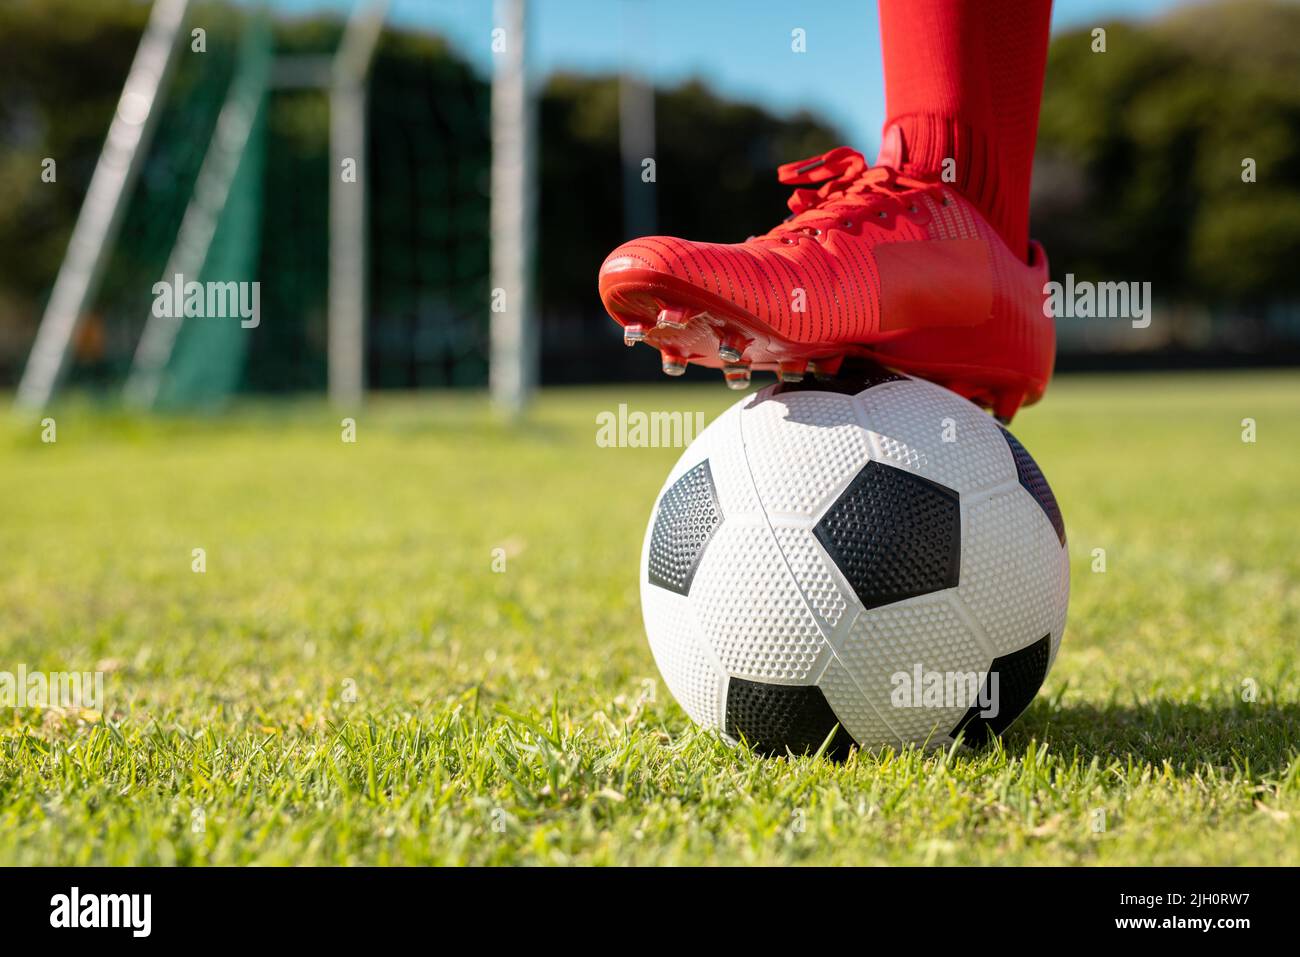 Coupe basse d'athlète masculin portant des chaussettes rouges et des chaussures mettant la jambe sur le ballon de football sur terre herbeuse Banque D'Images